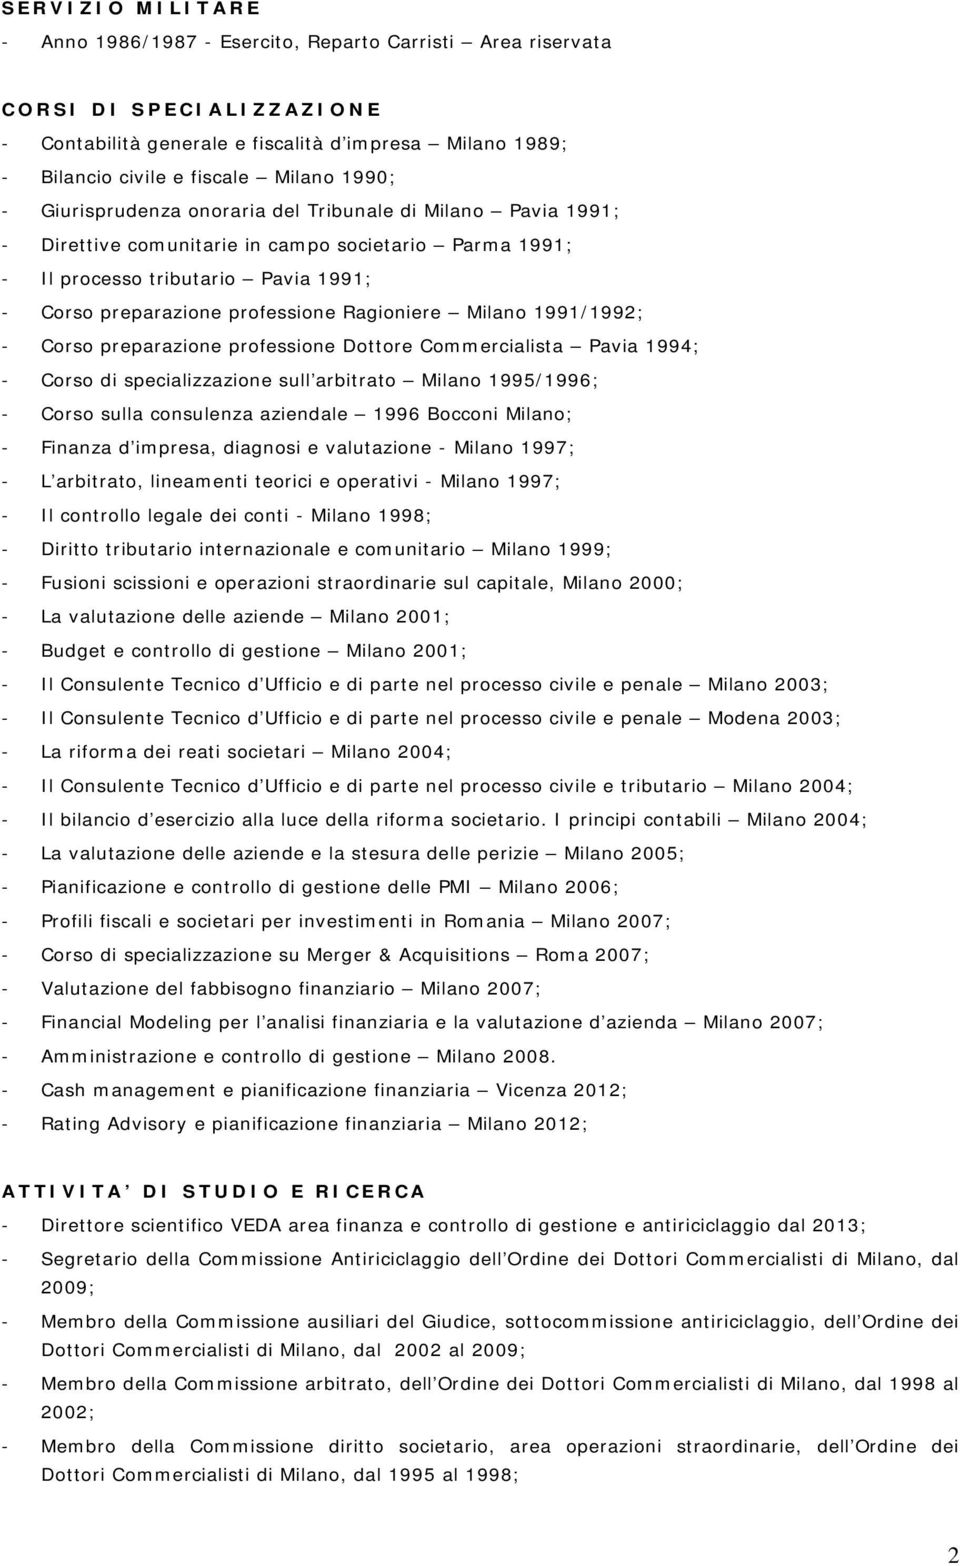 Ragioniere Milano 1991/1992; - Corso preparazione professione Dottore Commercialista Pavia 1994; - Corso di specializzazione sull arbitrato Milano 1995/1996; - Corso sulla consulenza aziendale 1996